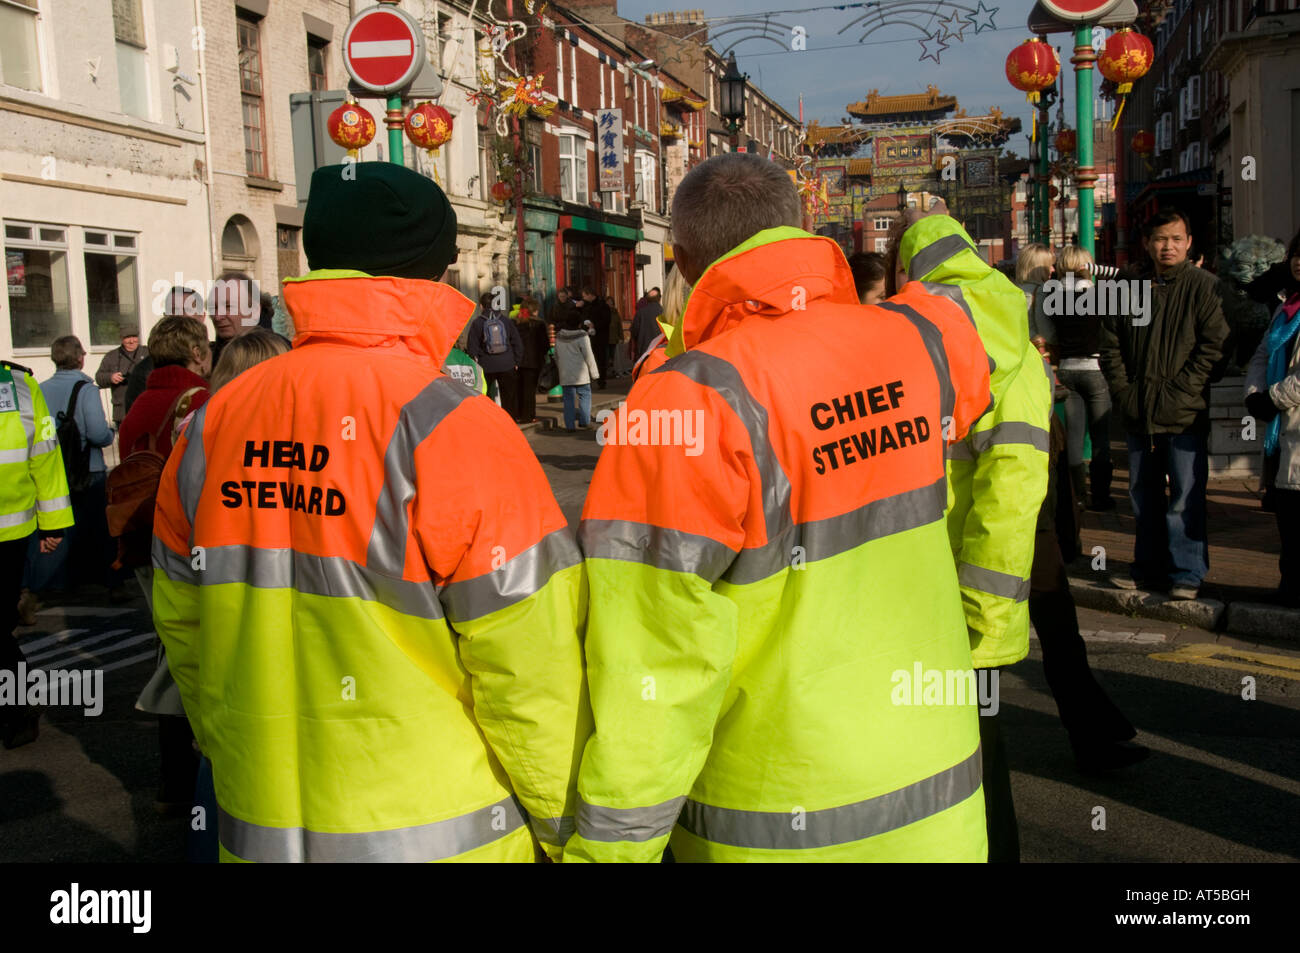 Deux stewards portant et jaune haute visibilité orange vestes réfléchissantes nouvel an chinois Liverpool Angleterre UK Banque D'Images